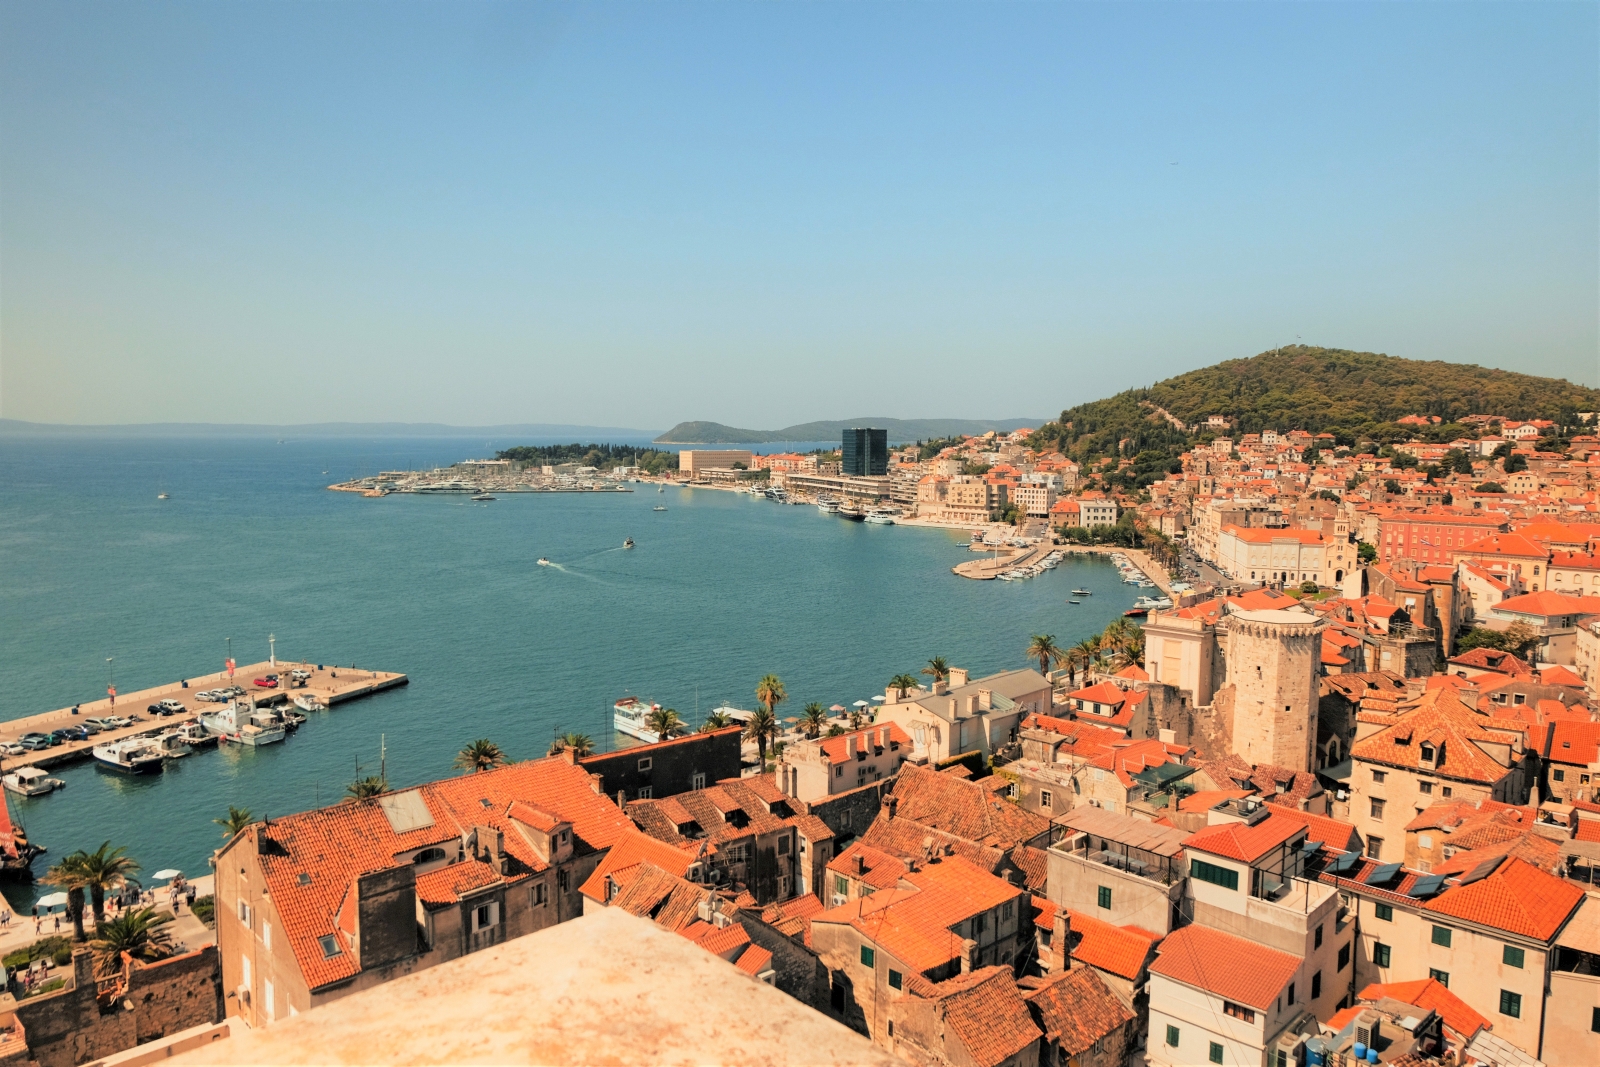 View overlooking rooftops in Split